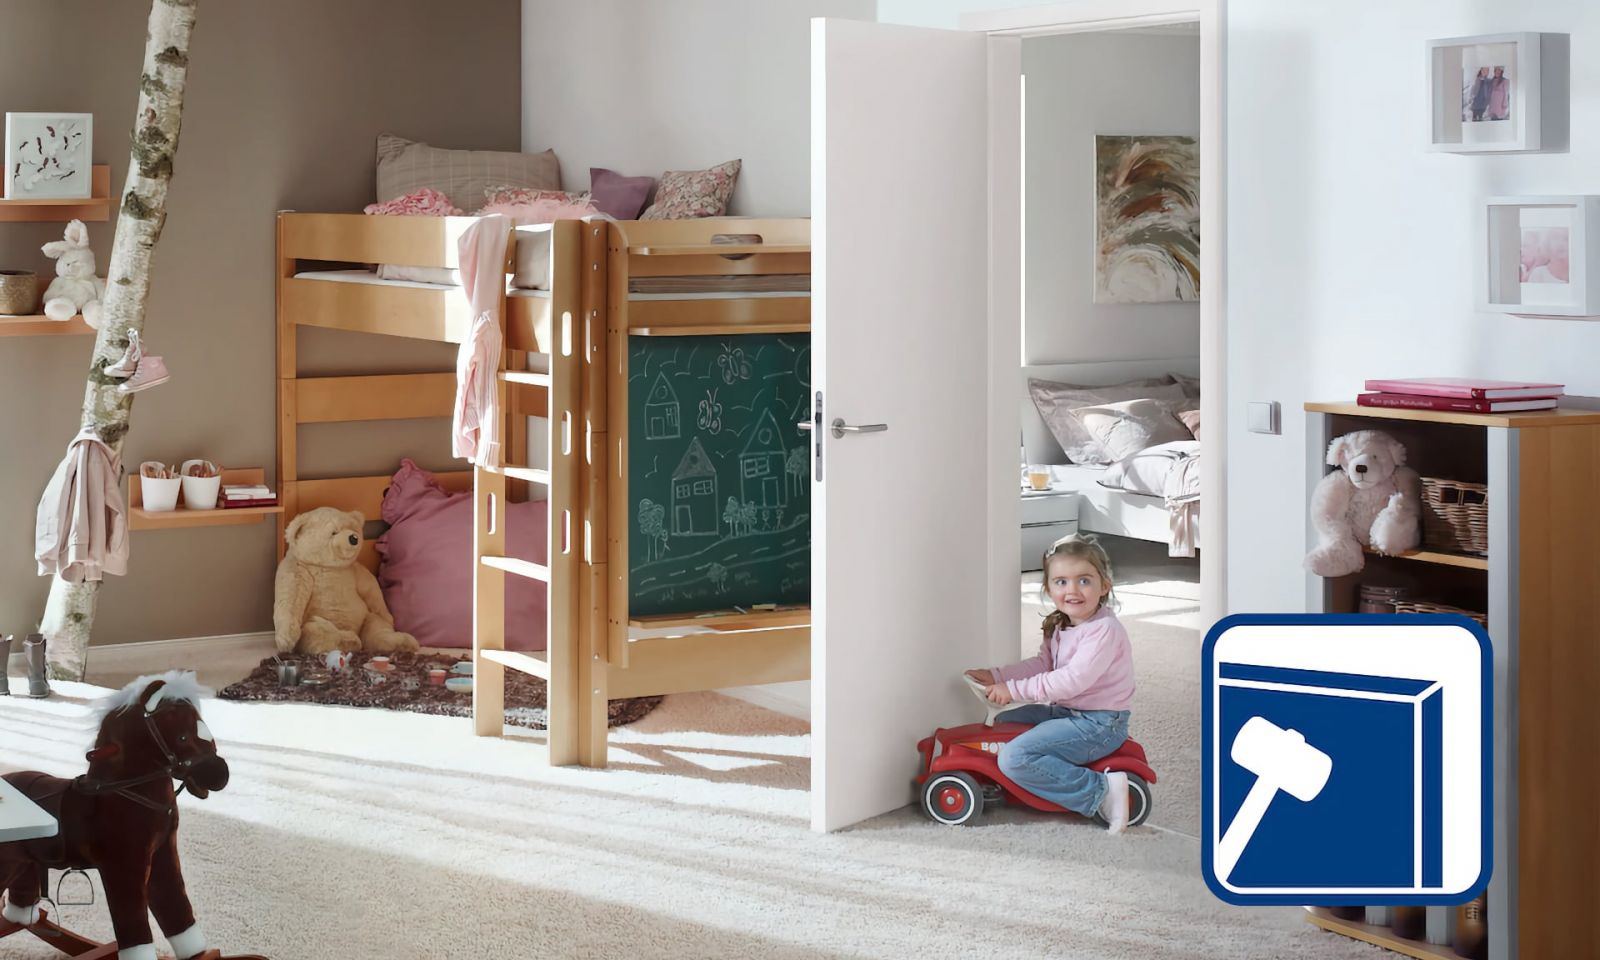 Девочка играет в детской комнате, окруженной игрушками, кроватью-горищем, белой дверью и декоративными элементами.